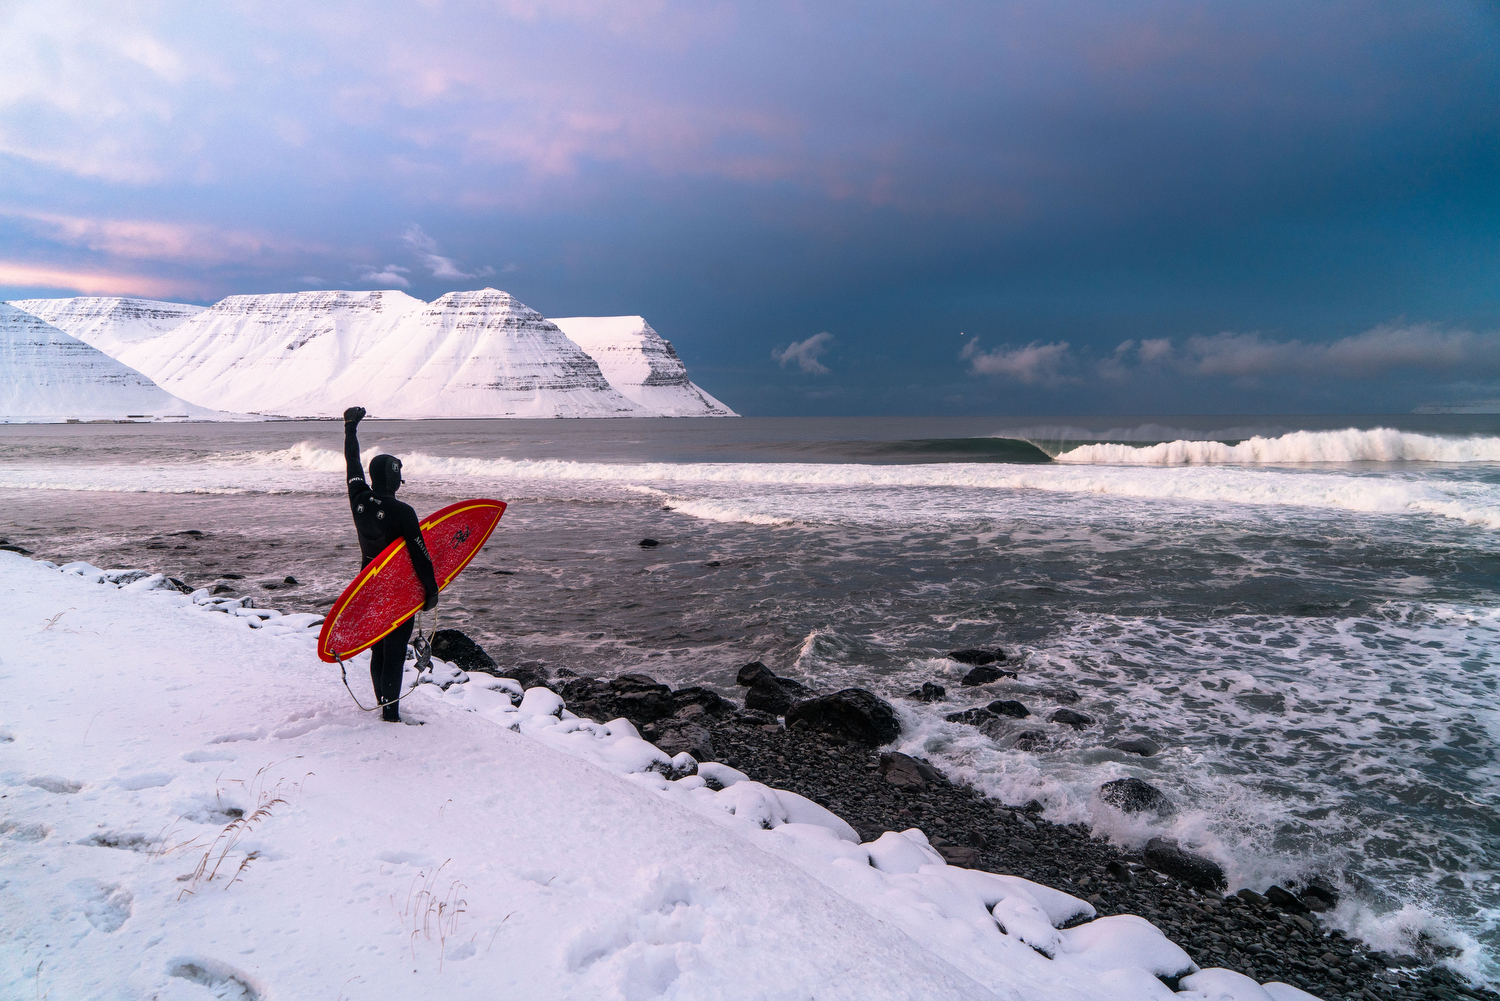 Chris Burkard Surf Photographer